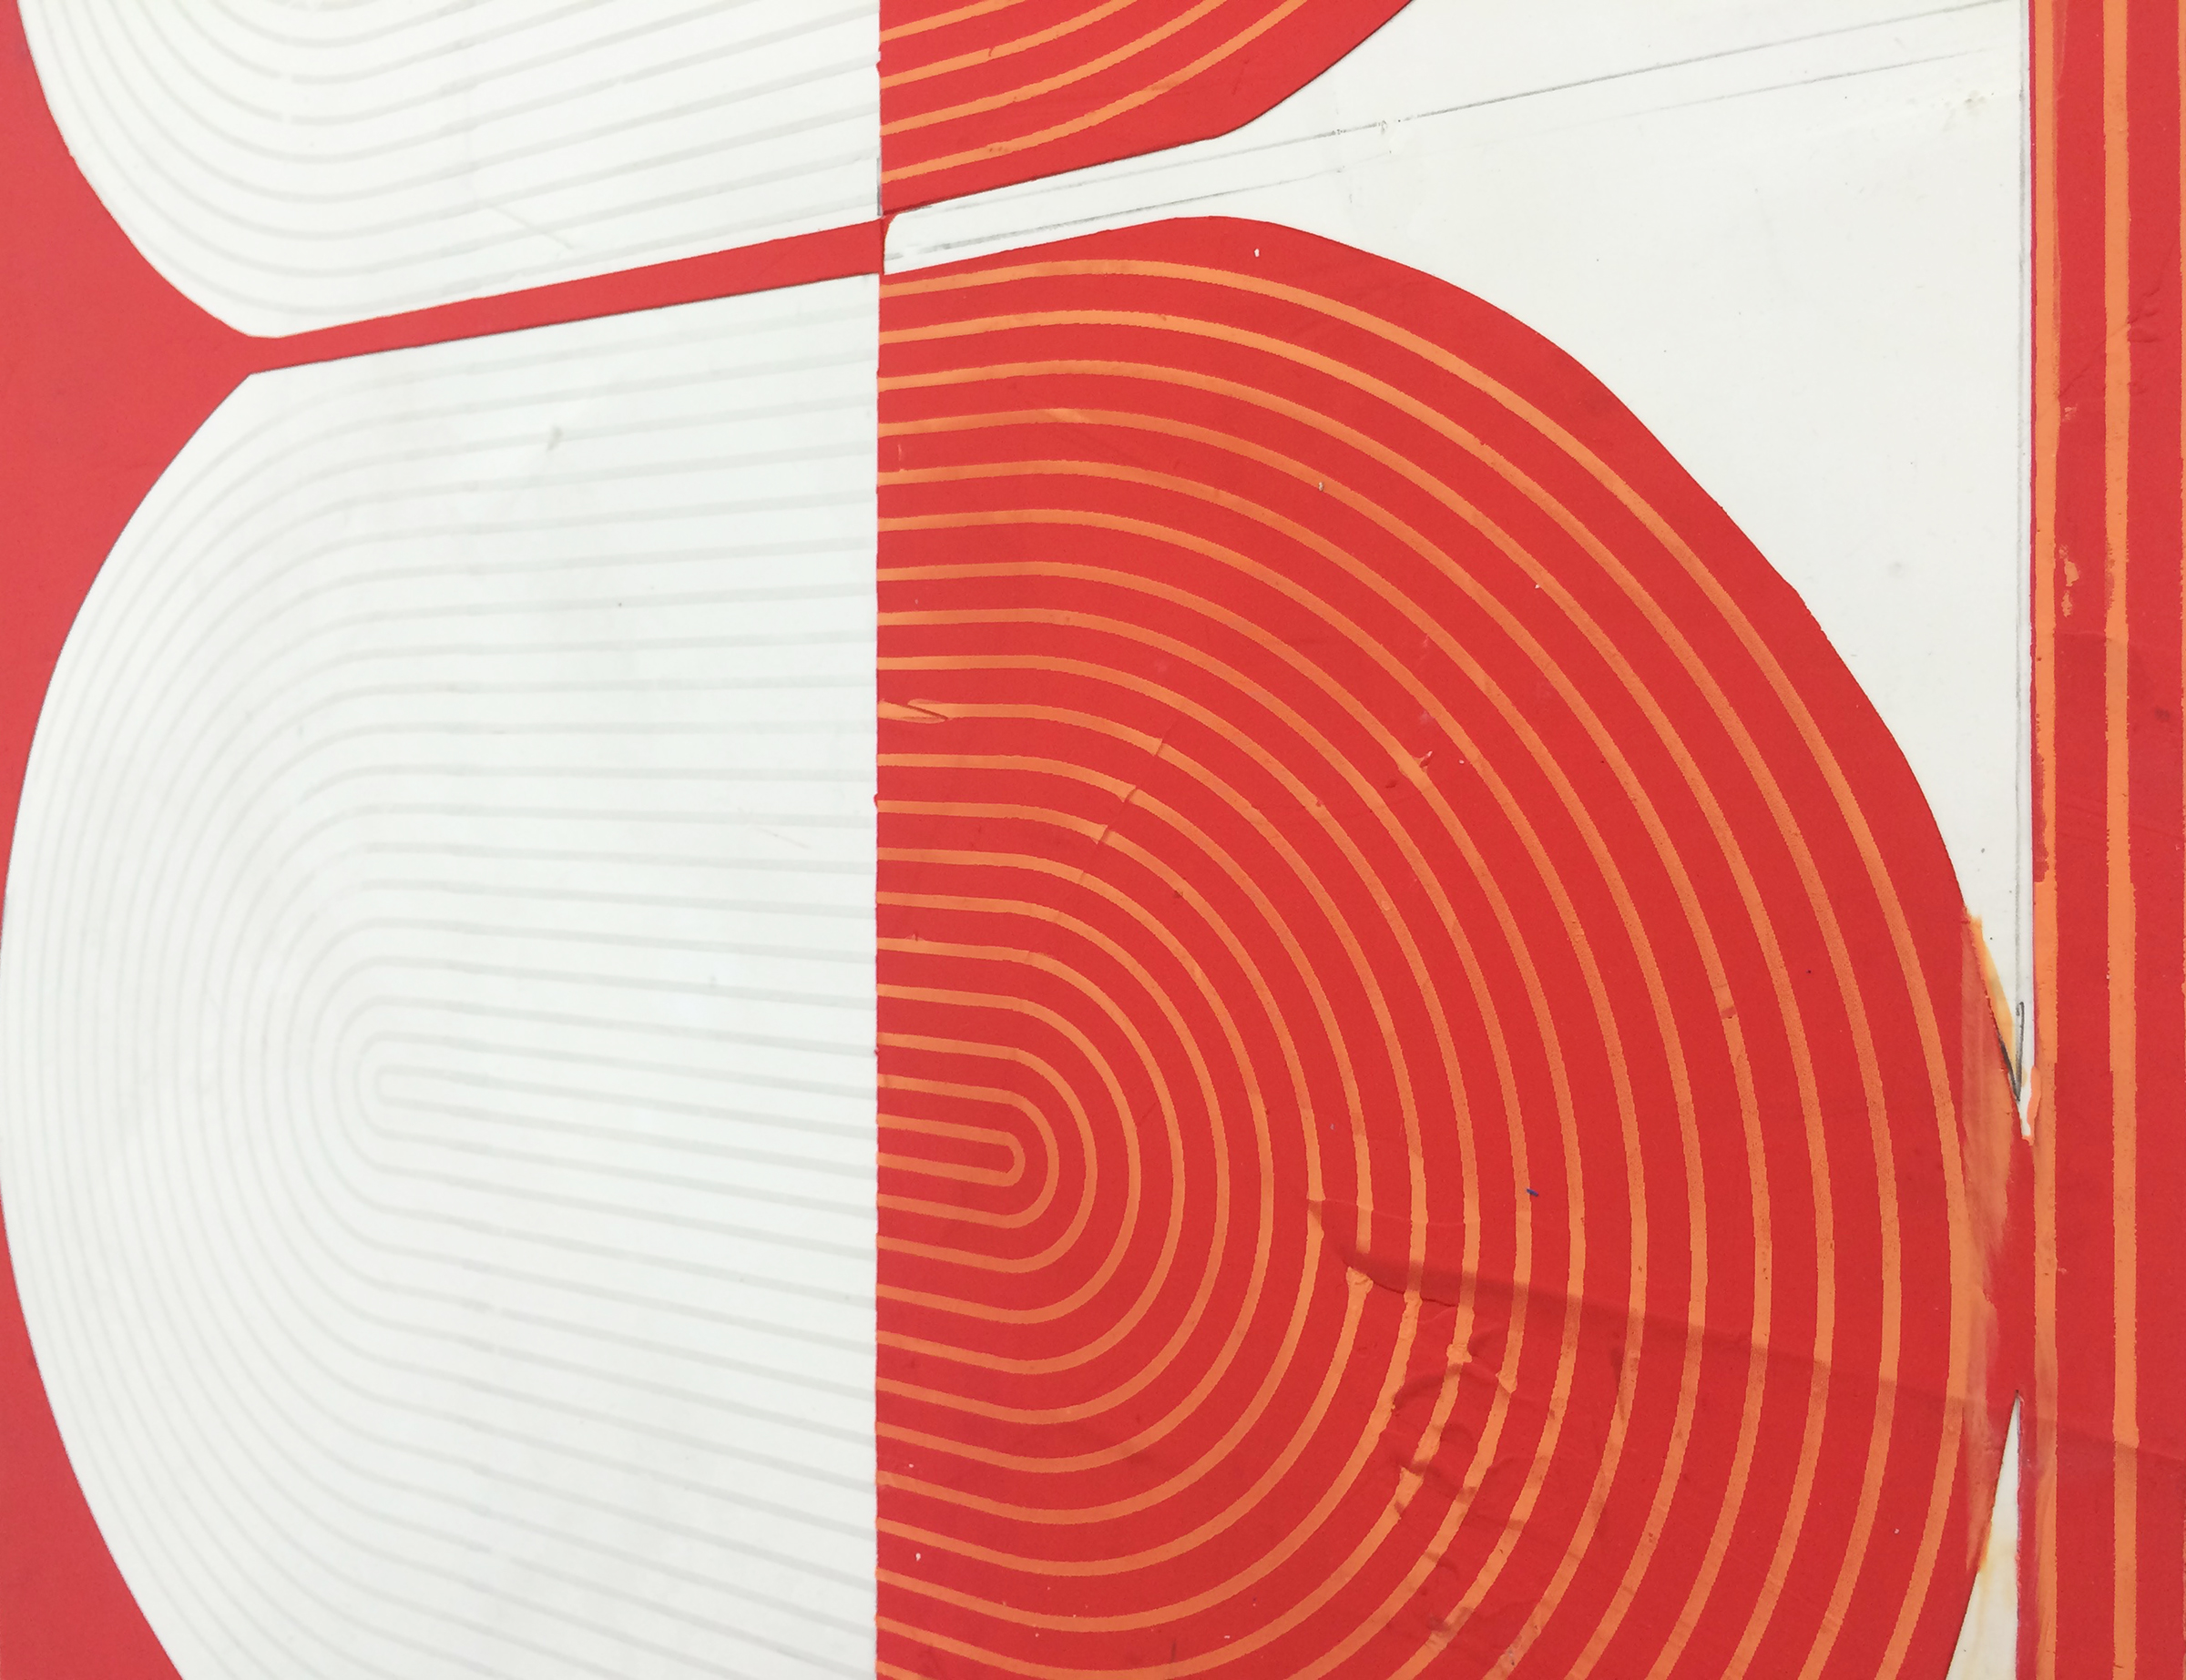   ELISE FERGUSON  (detail) &nbsp;Deuce , 2016, pigmented plaster on panel, 30" x 61" 